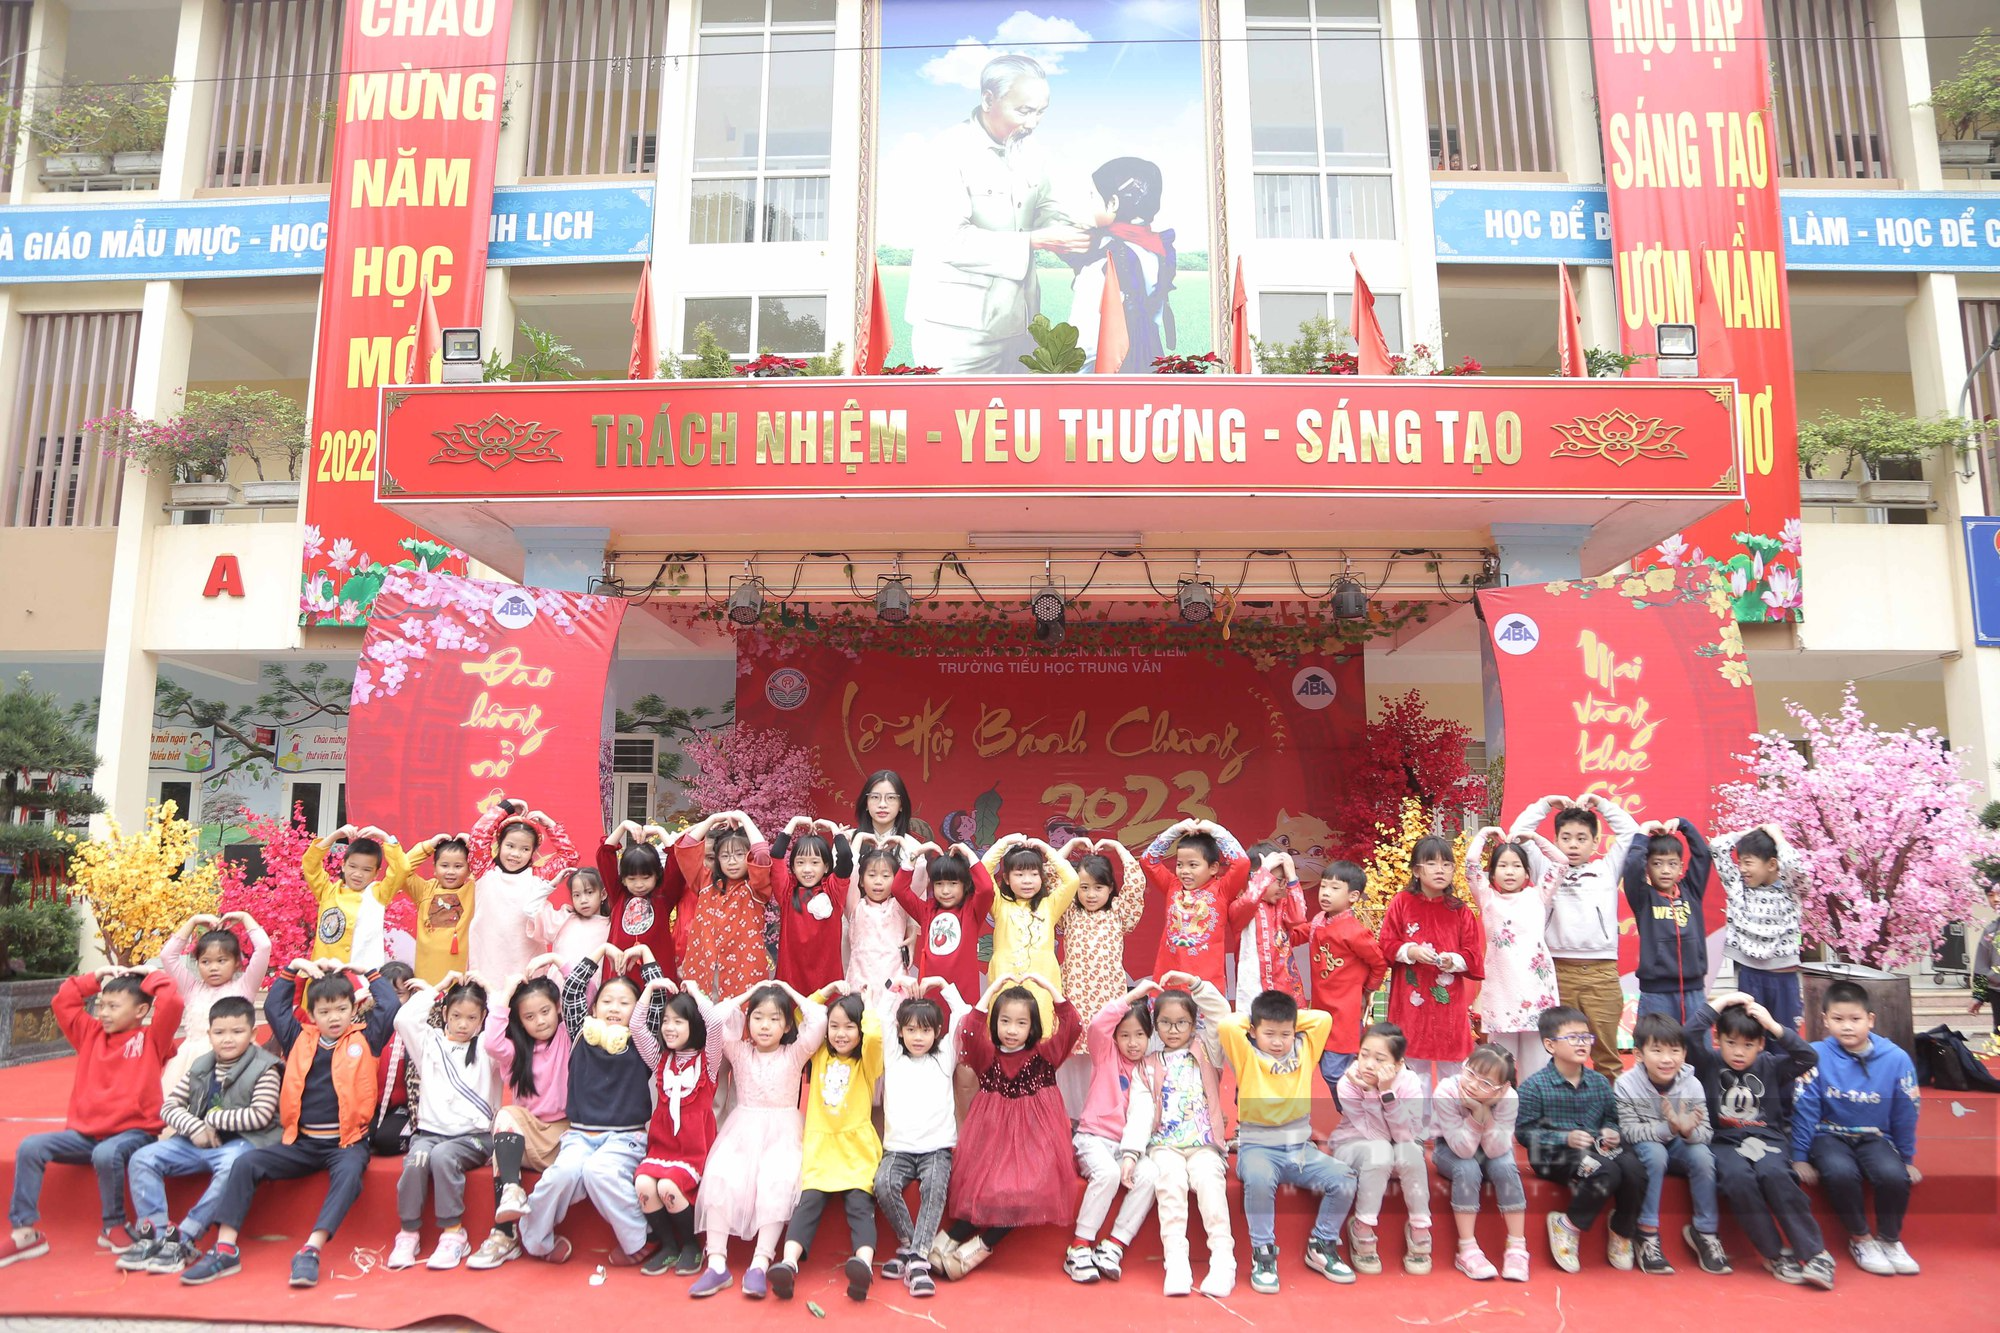 Gần 2.000 học sinh tiểu học ở Hà Nội trải nghiệm gói bánh chưng trên sân trường - Ảnh 12.